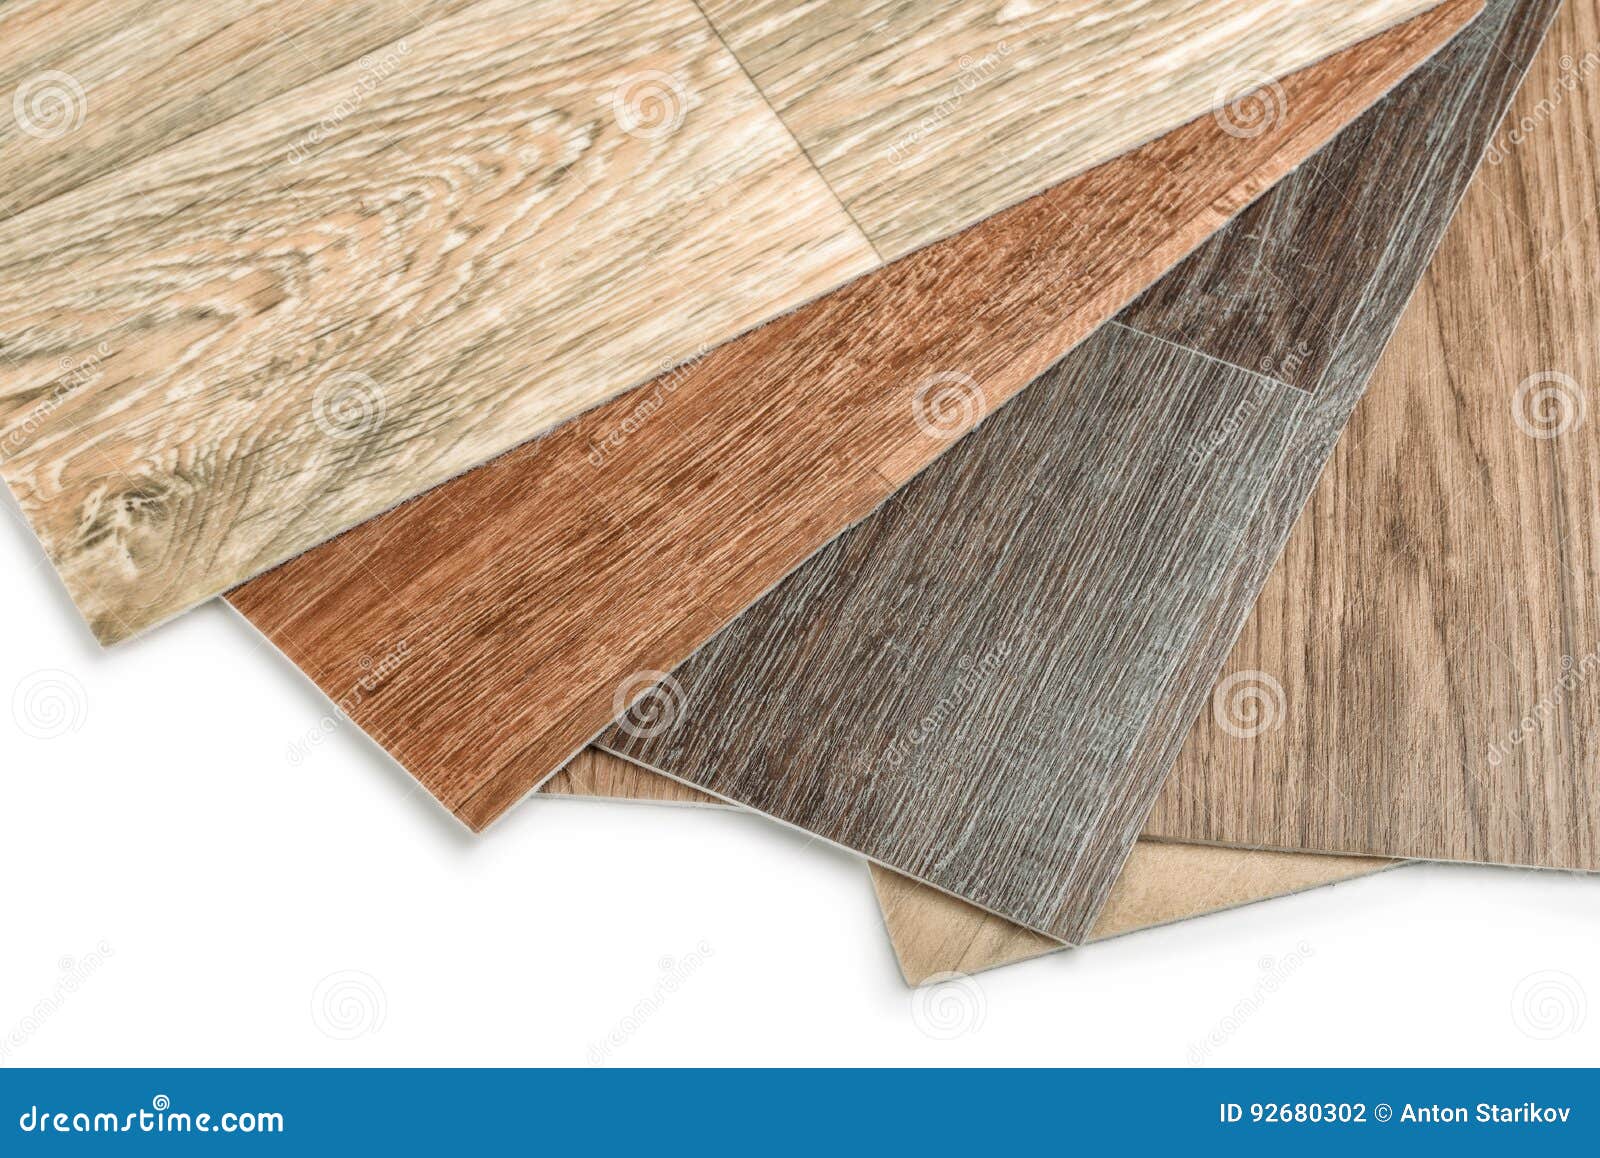 close up of linoleum flooring